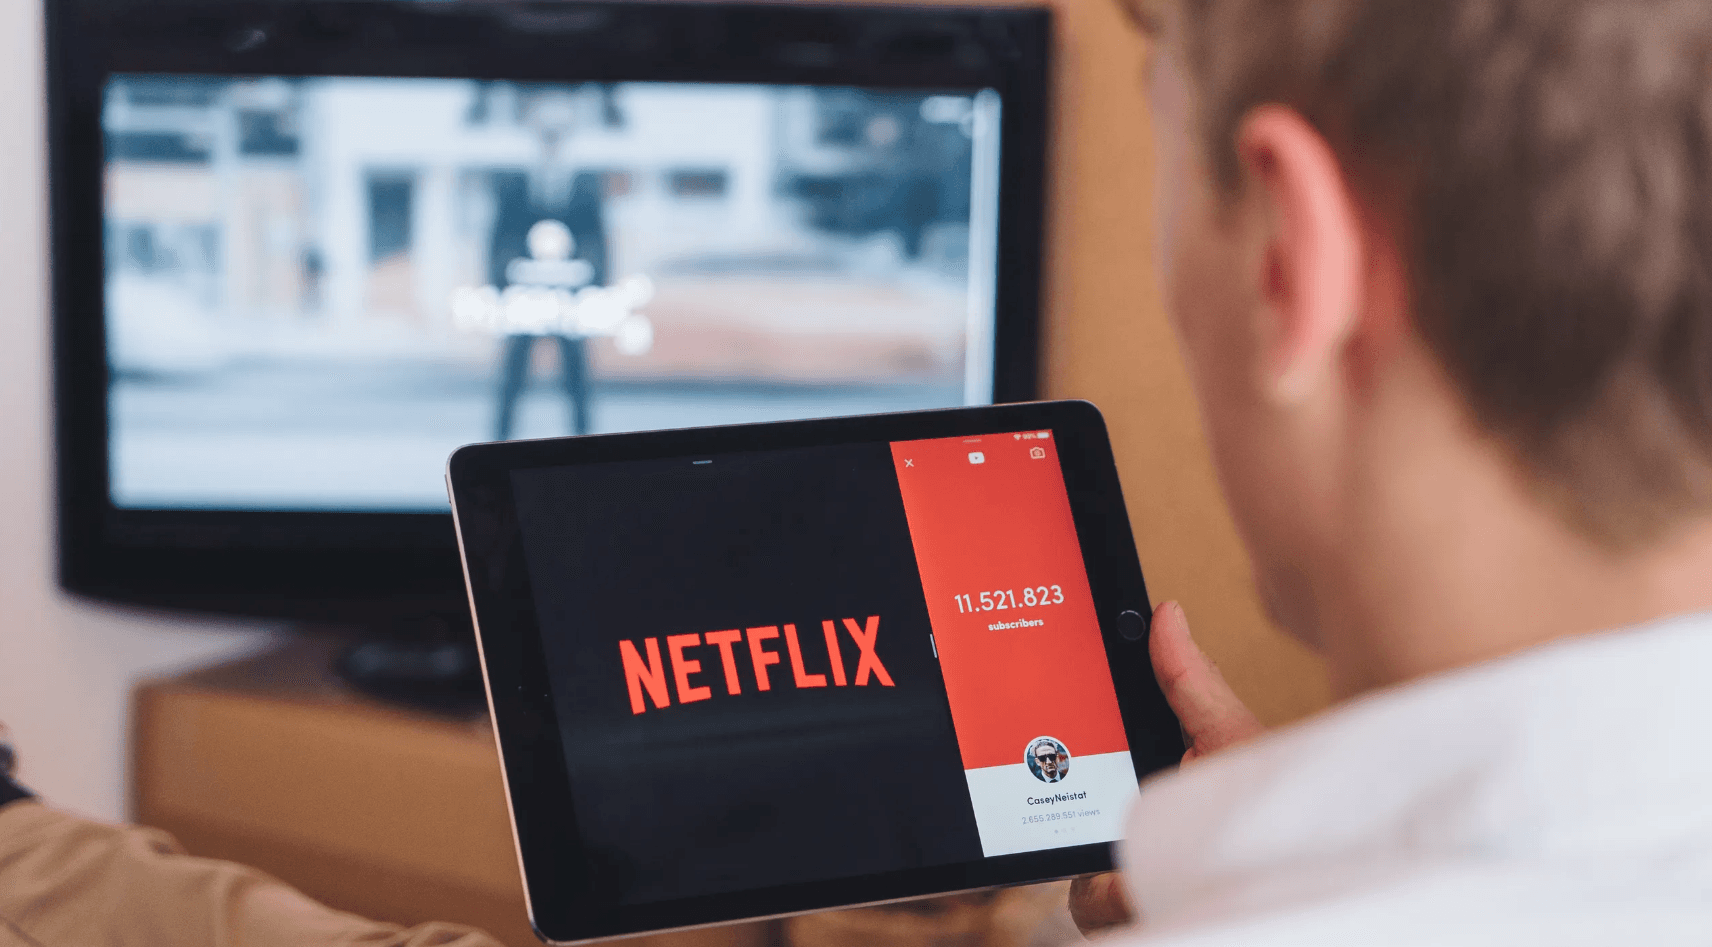 Sea el plan que sea que tengas en tu hogar, los precios de Netflix son económicos.